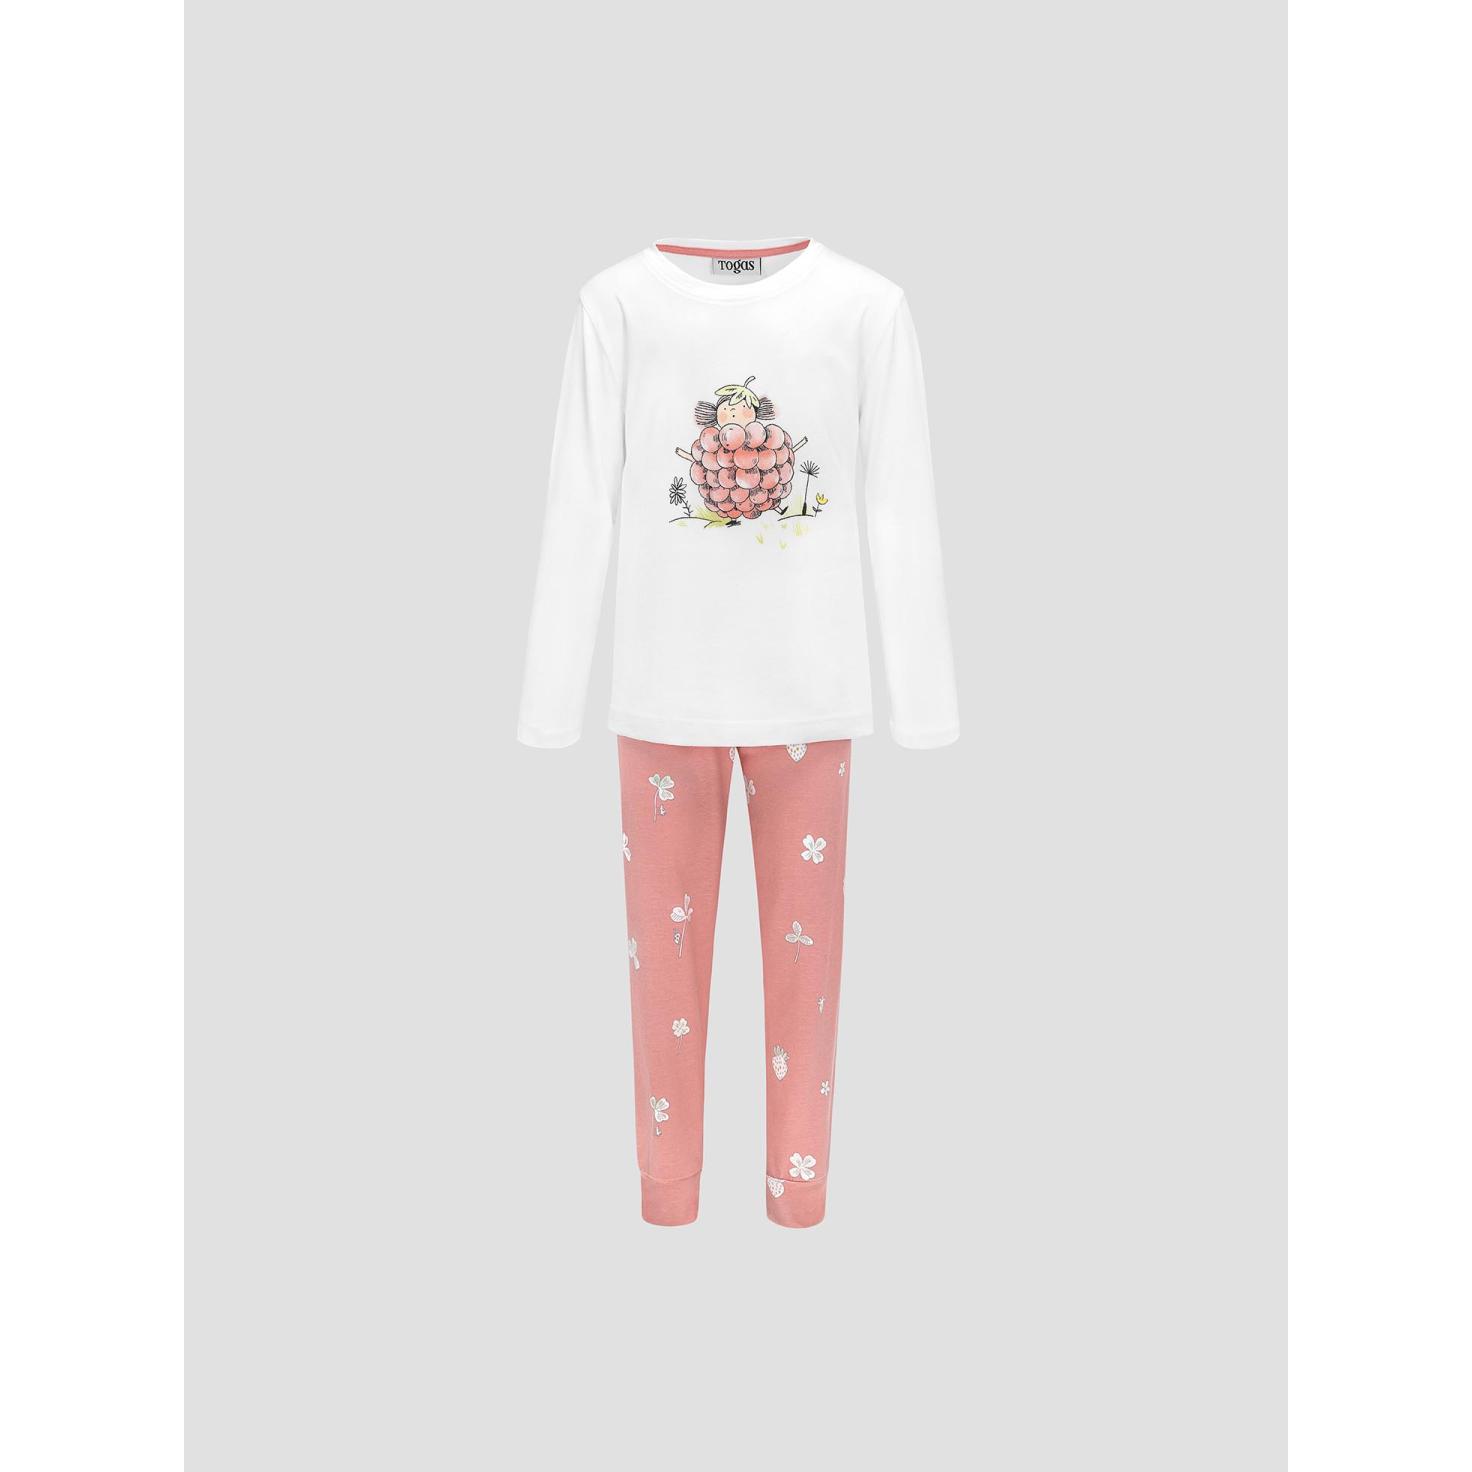 Пижама для девочек Kids by togas Стробби бело-розовый 140-146 см жен пижама с шортами черри белый р 50